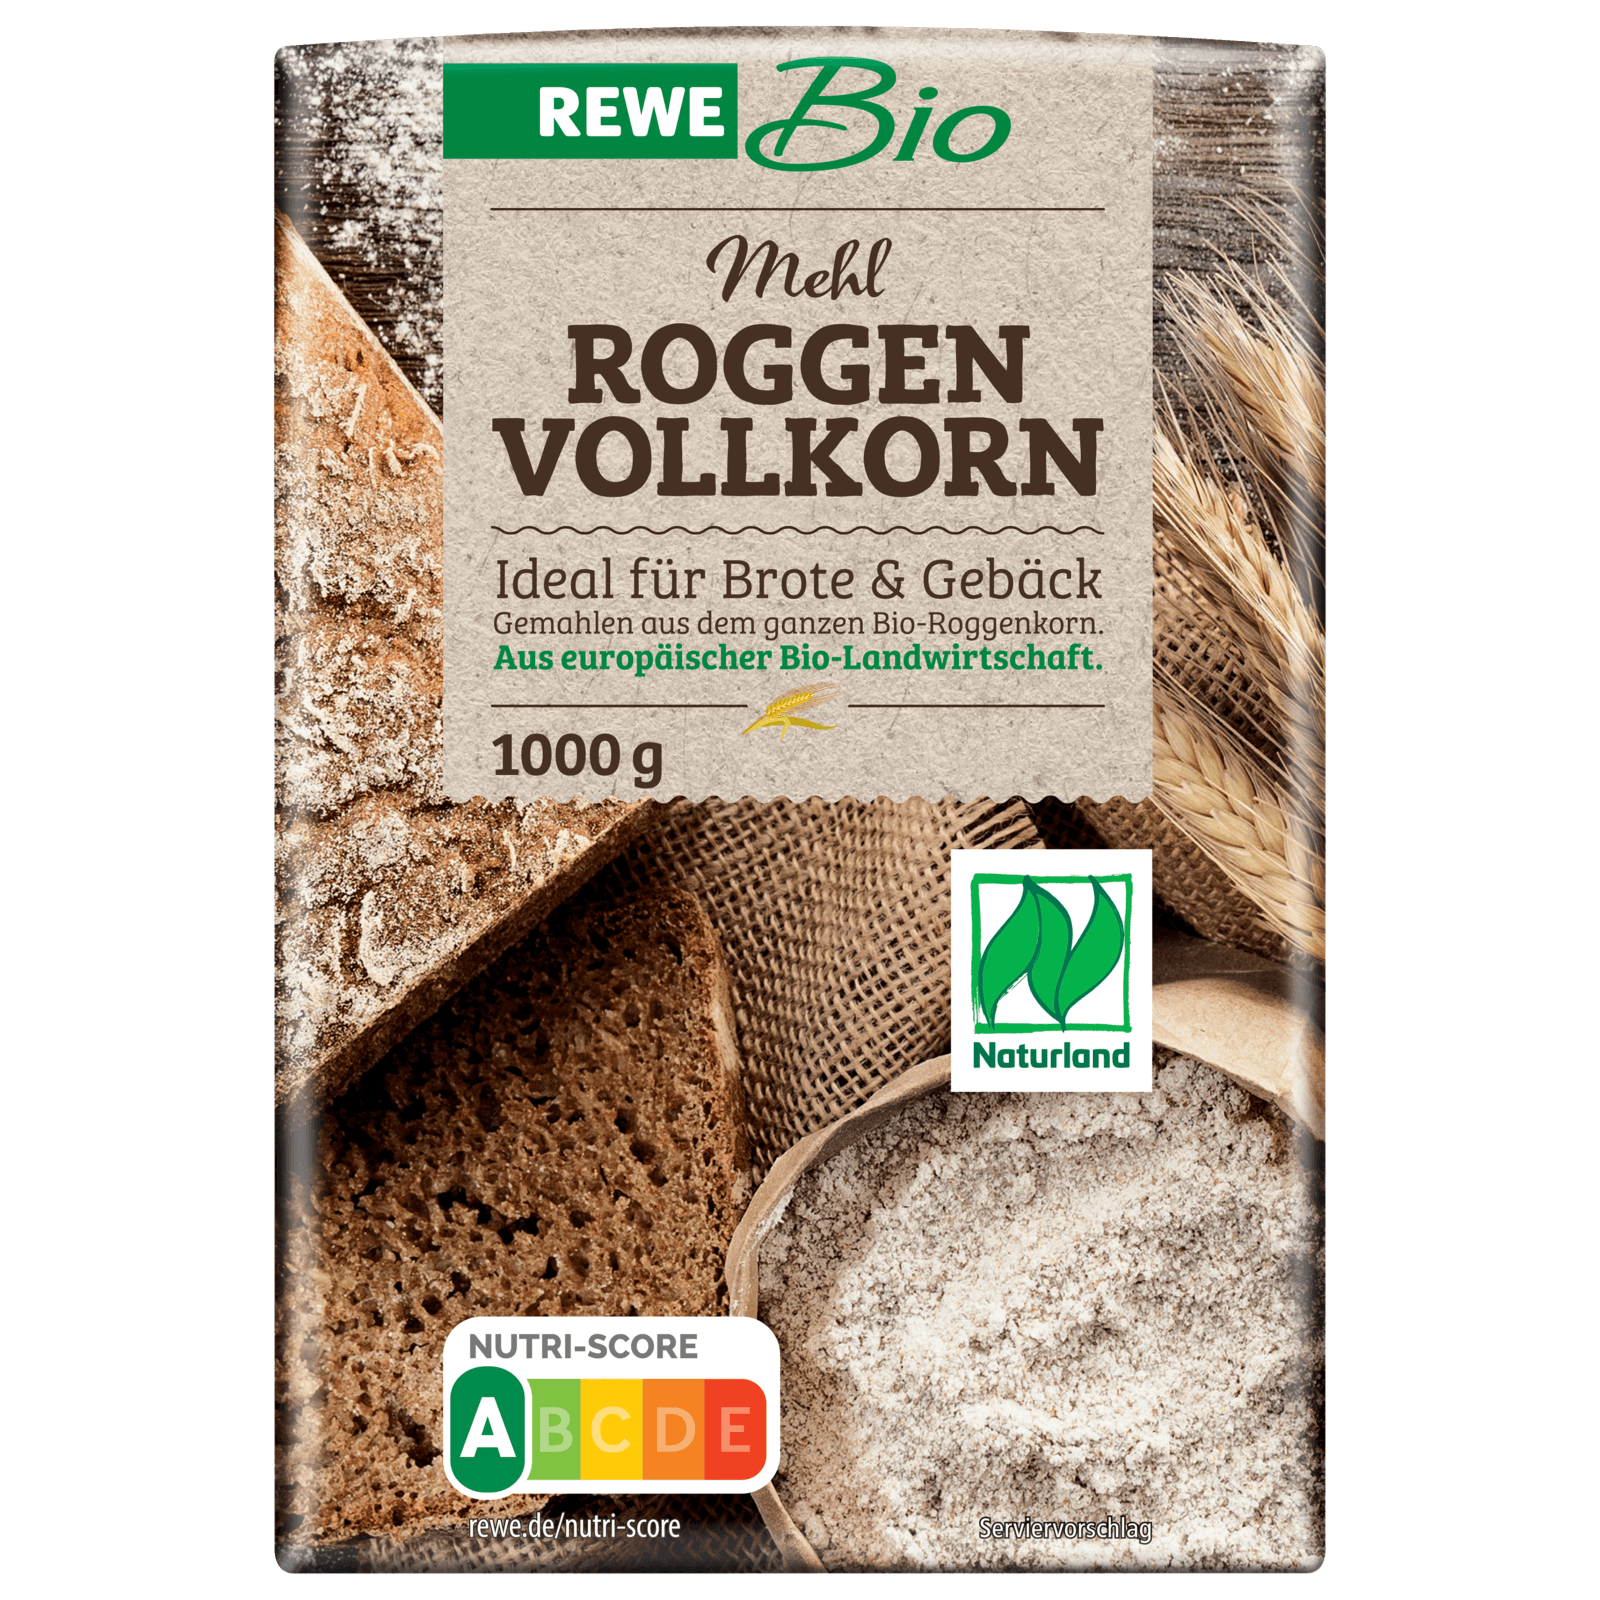 REWE Bio Naturland Roggen Vollkorn Mehl 1000g